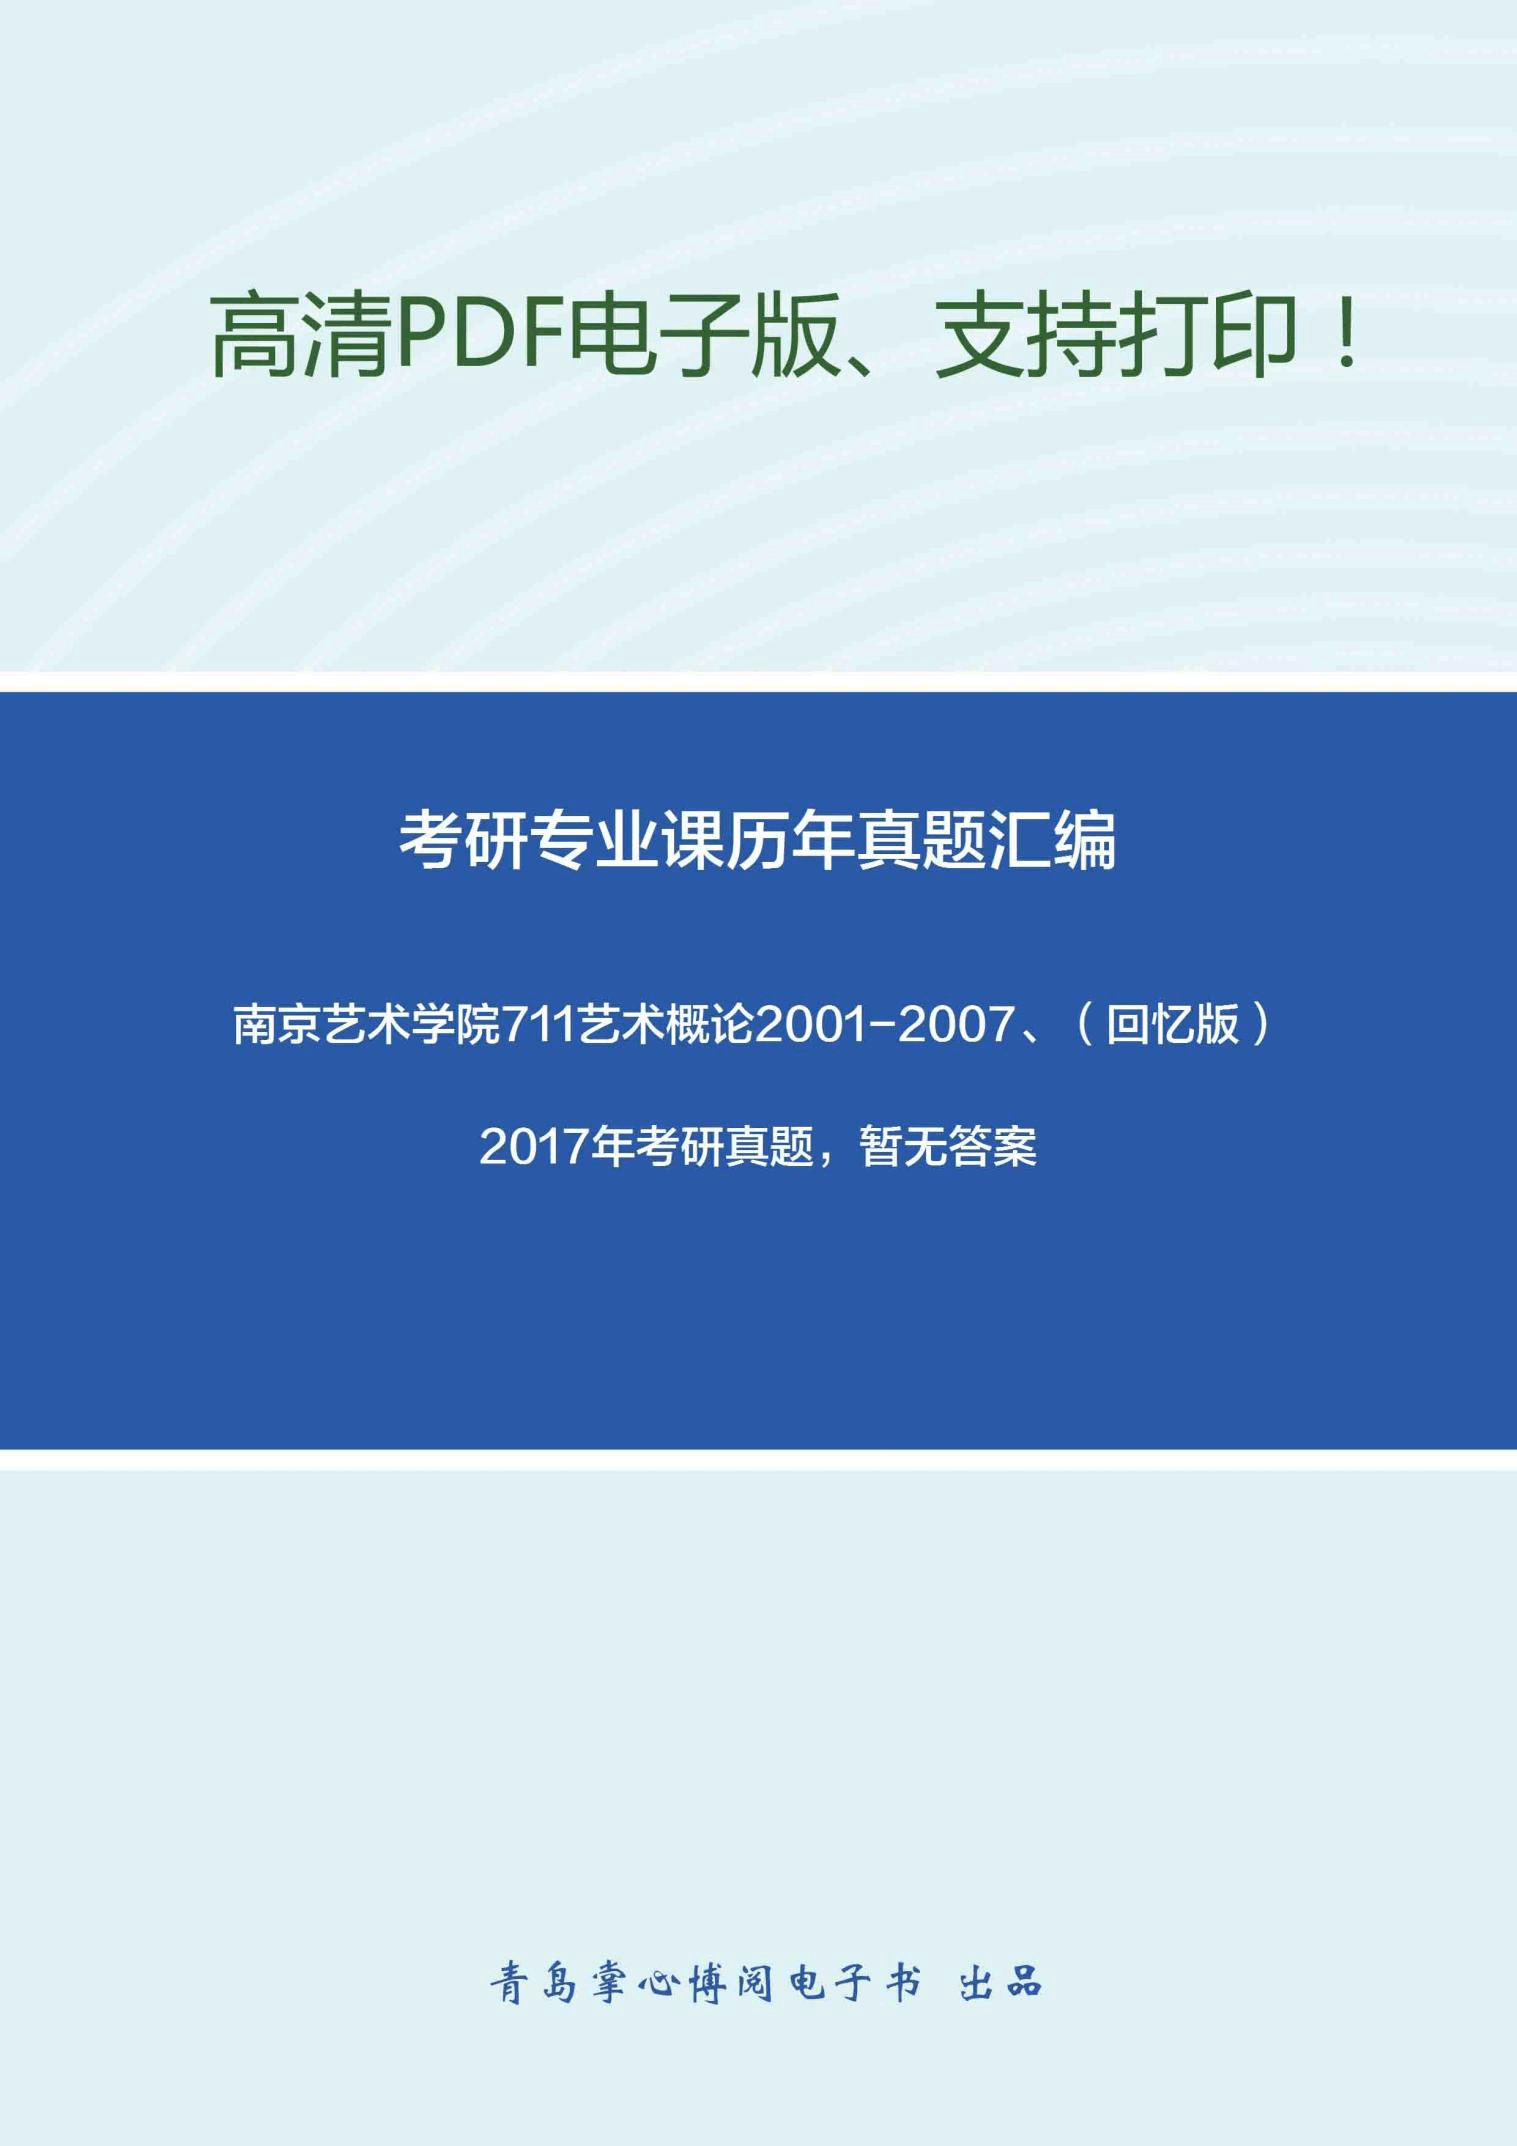 南京艺术学院711艺术概论2001-2007、(回忆版)2017年考研真题,暂无答案-8